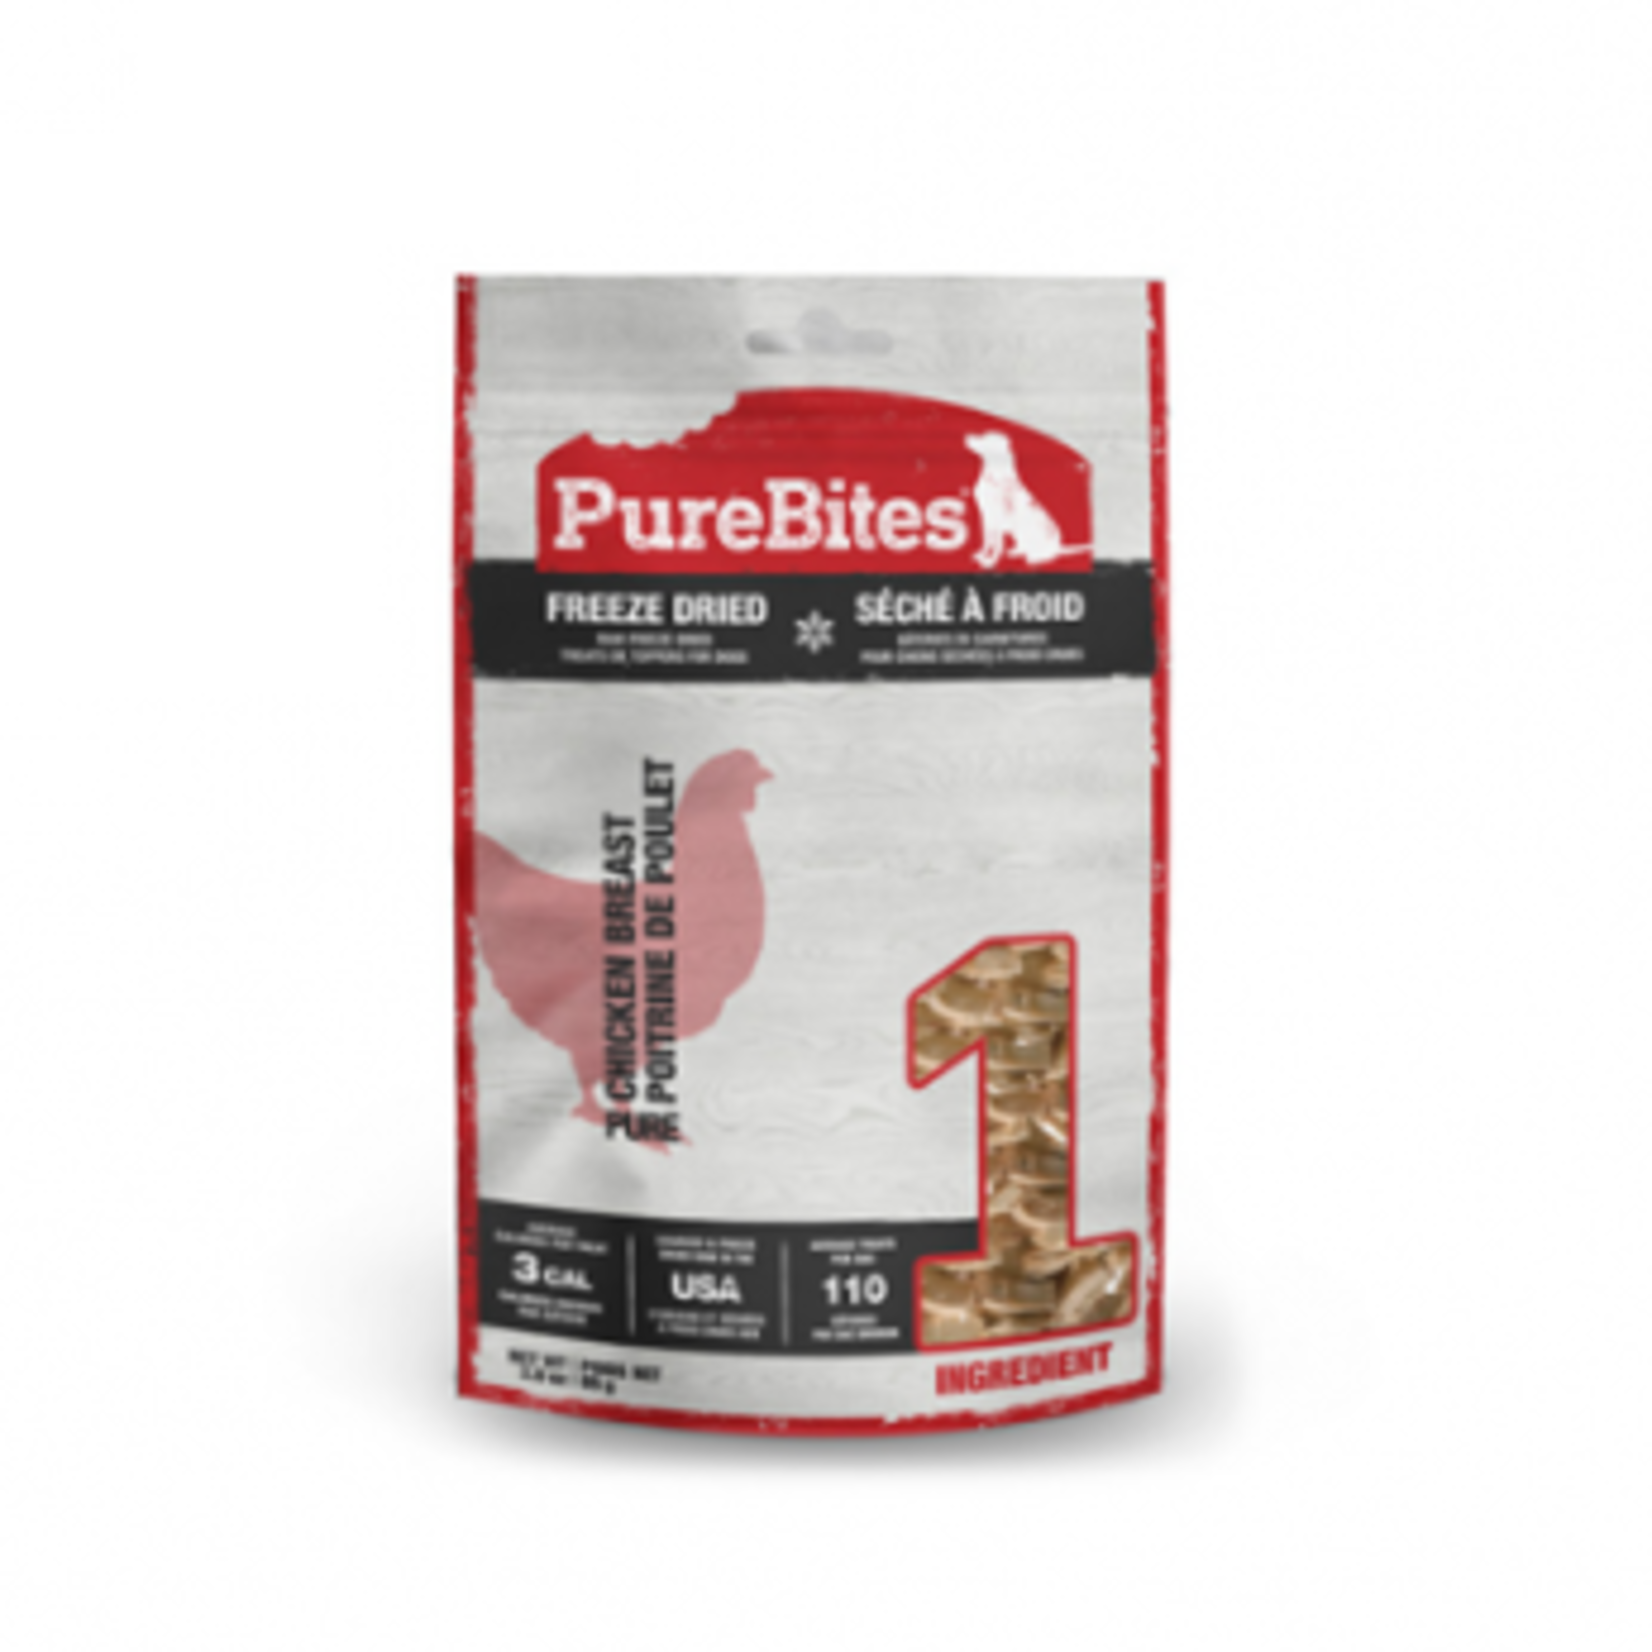 PureBites Chicken Breast - Freeze-dried - 85 g